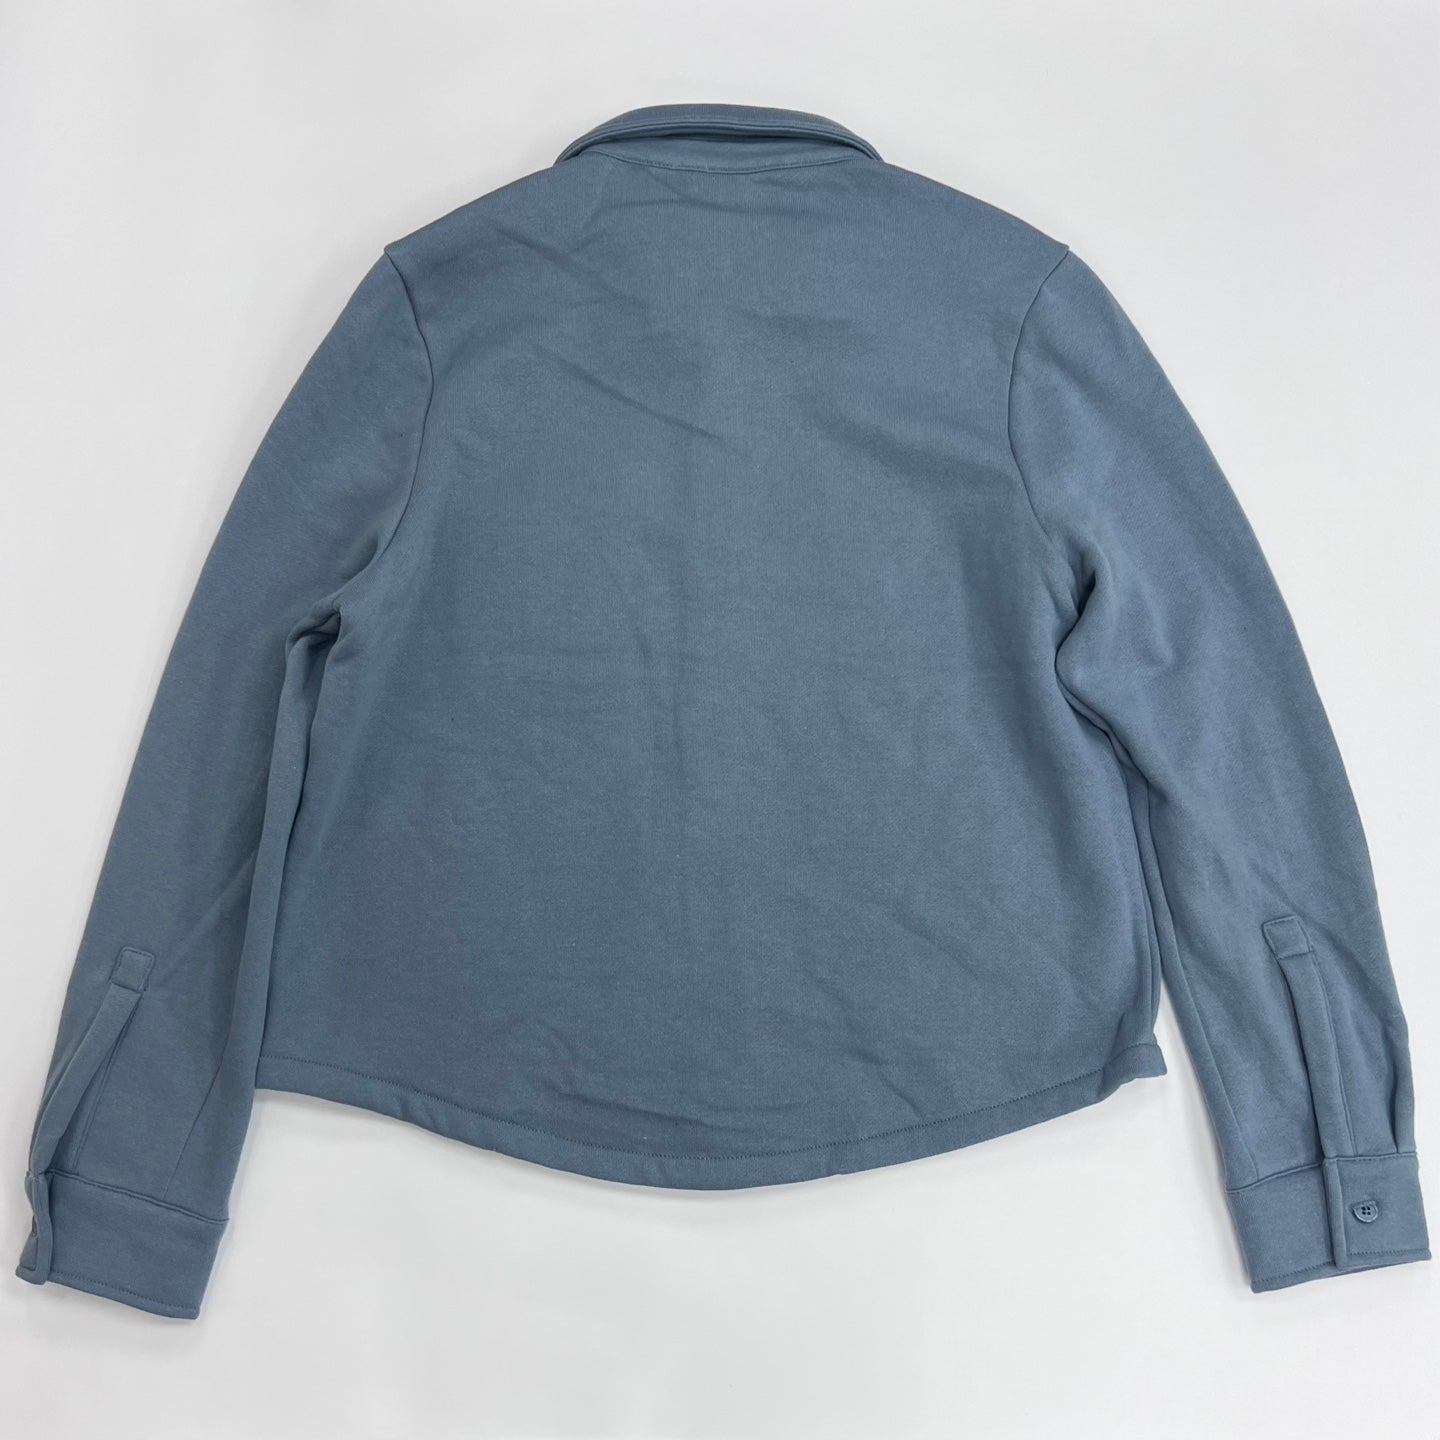 Women's Long Sleeve Button Down Fleece Jacket